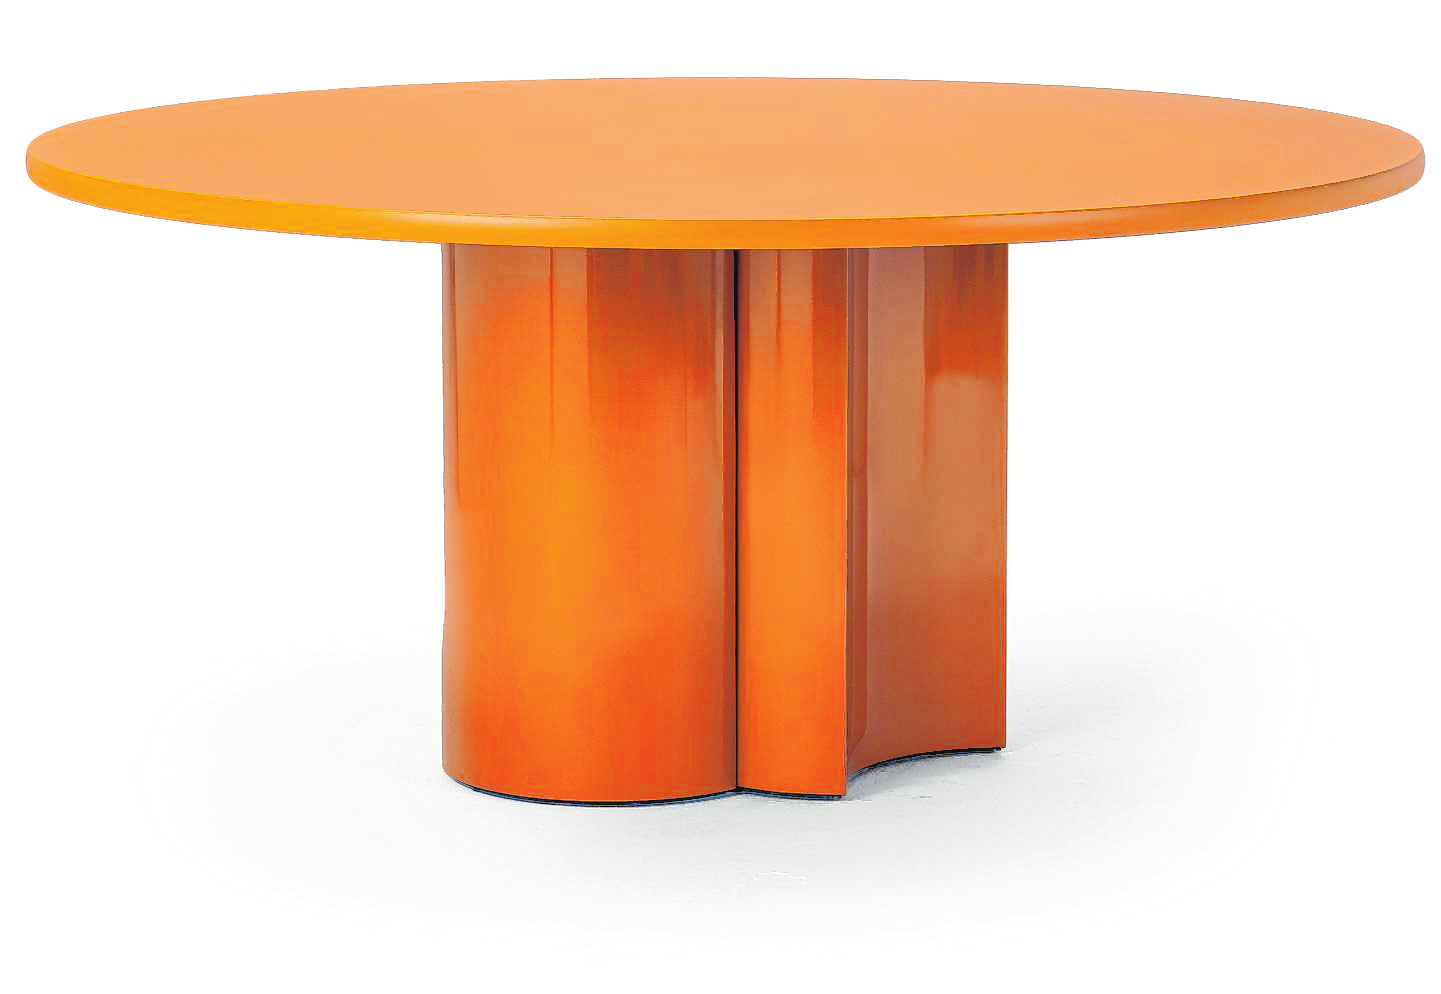 Standfest: Tische mit einem massiven Bein sind im Trend. Auch Zanotta bringt mit BOL ein Modell heraus. | Bild: picture alliance/dpa/Zanotta